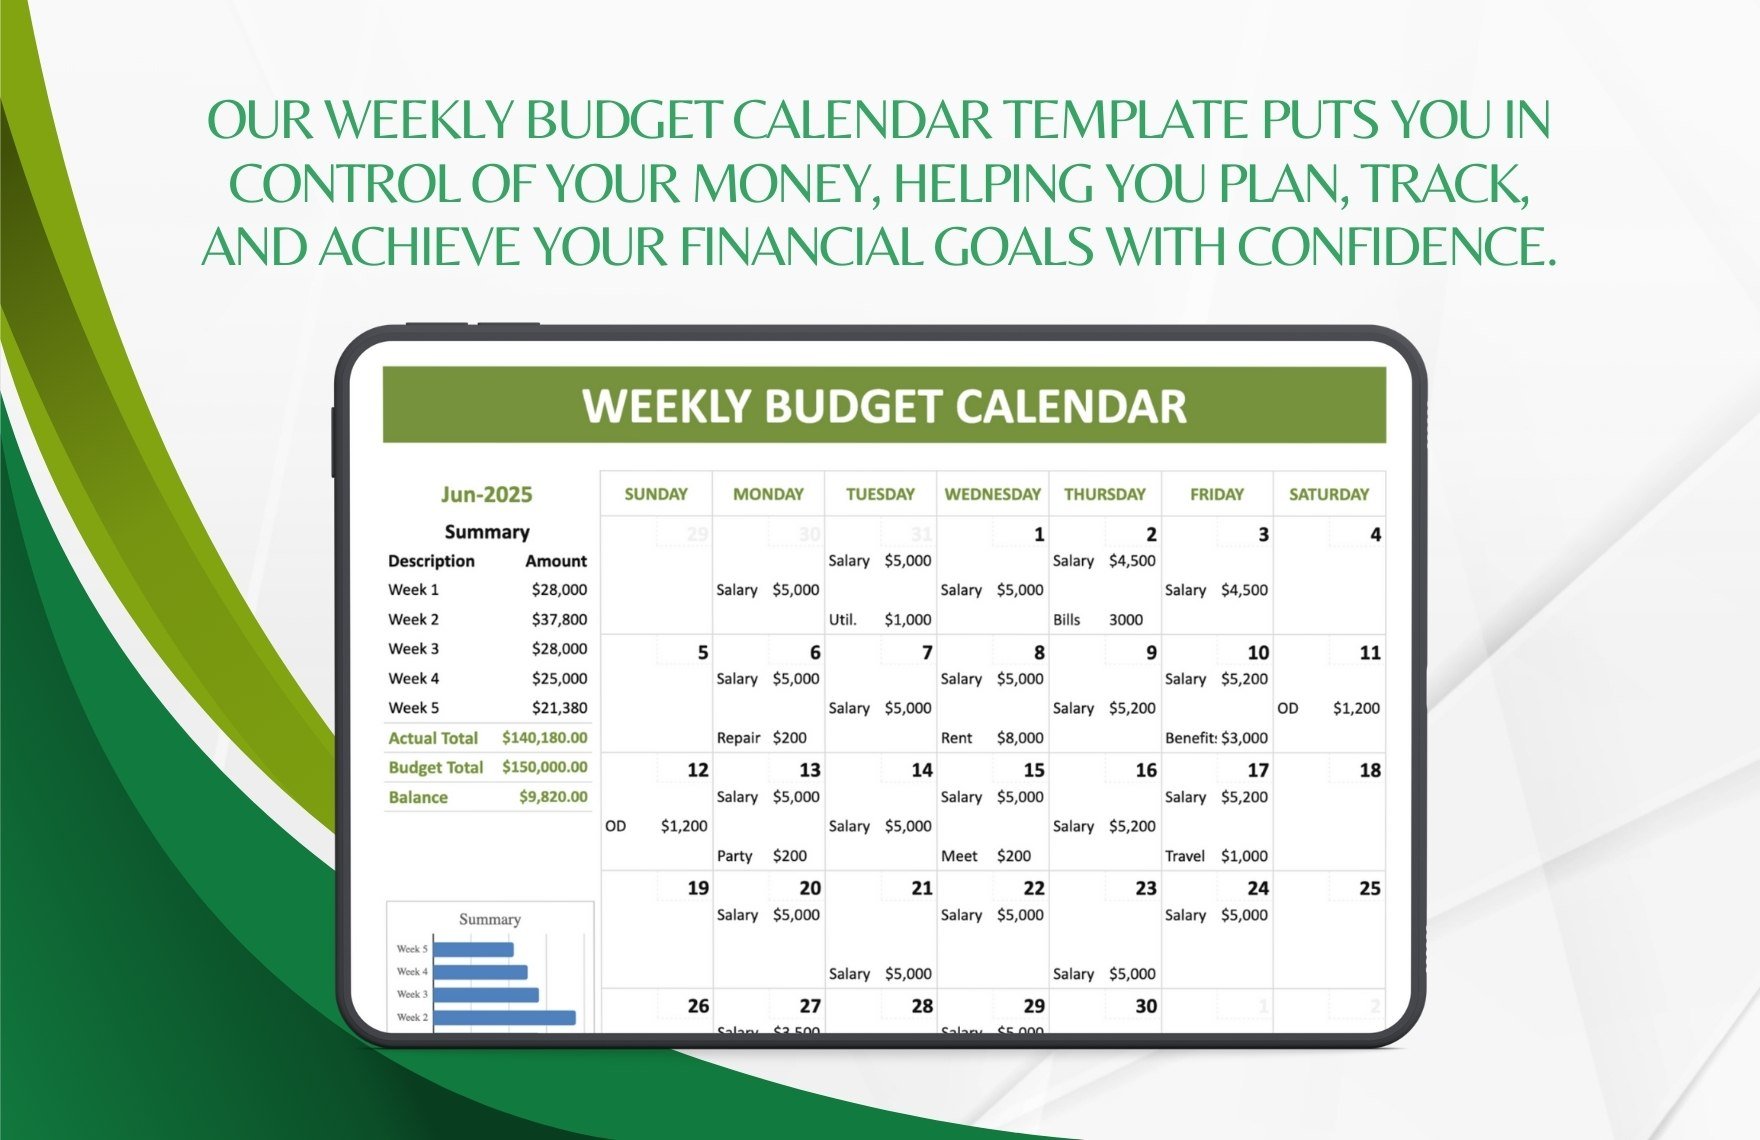 Weekly Budget Calendar Template